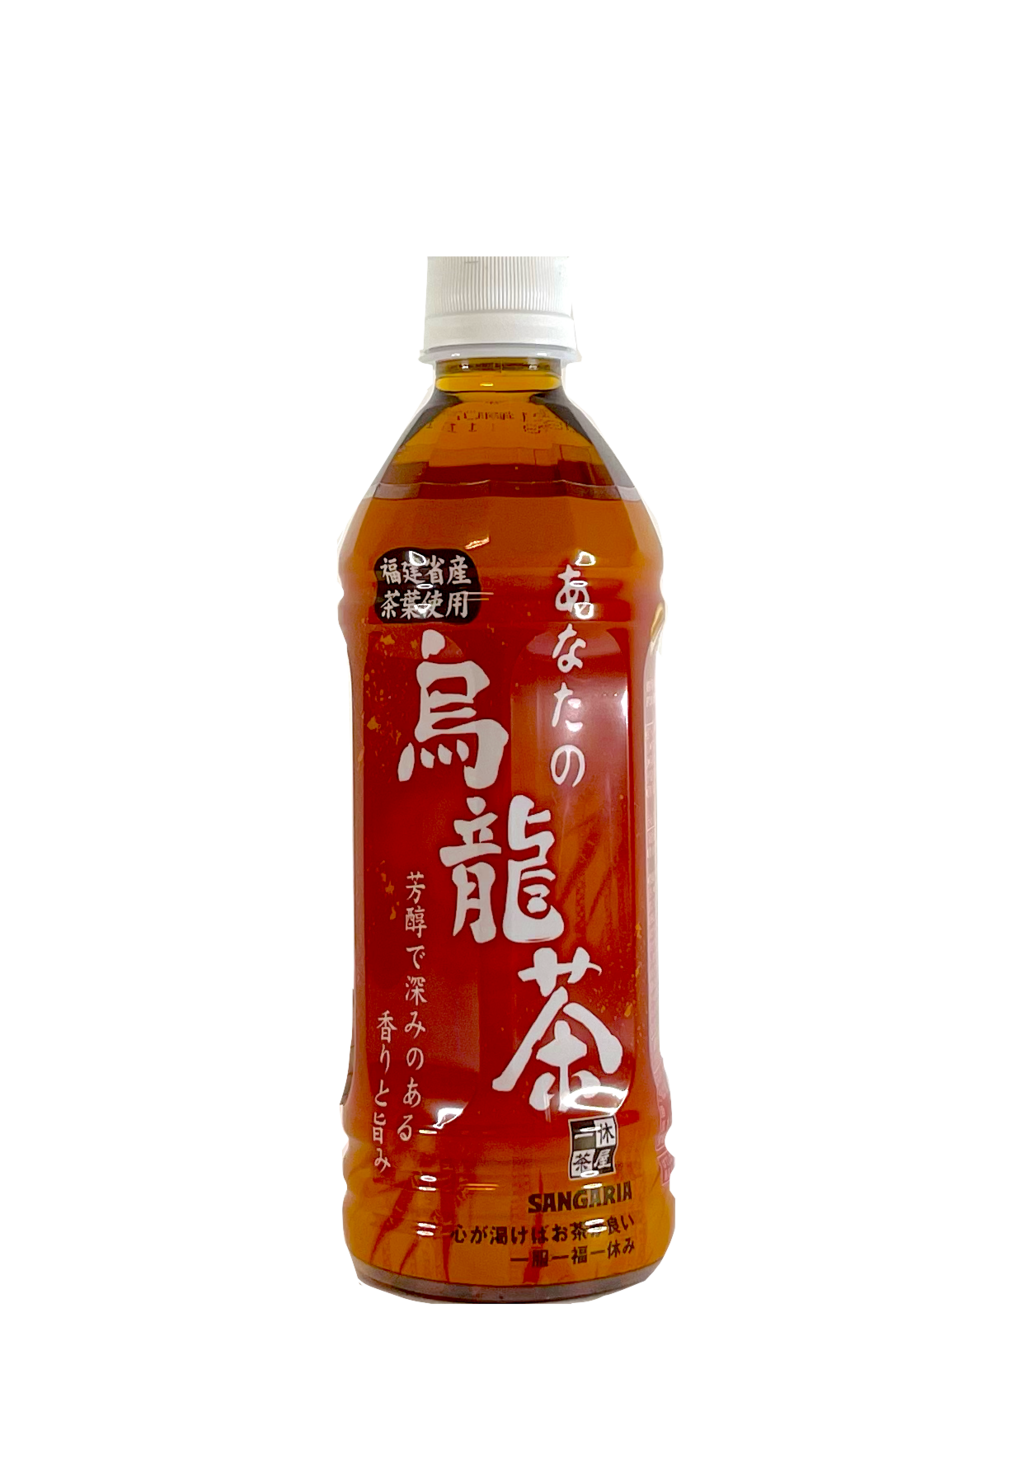 保质期:2023.02.28 乌龙茶 500ml Sangaria 日本